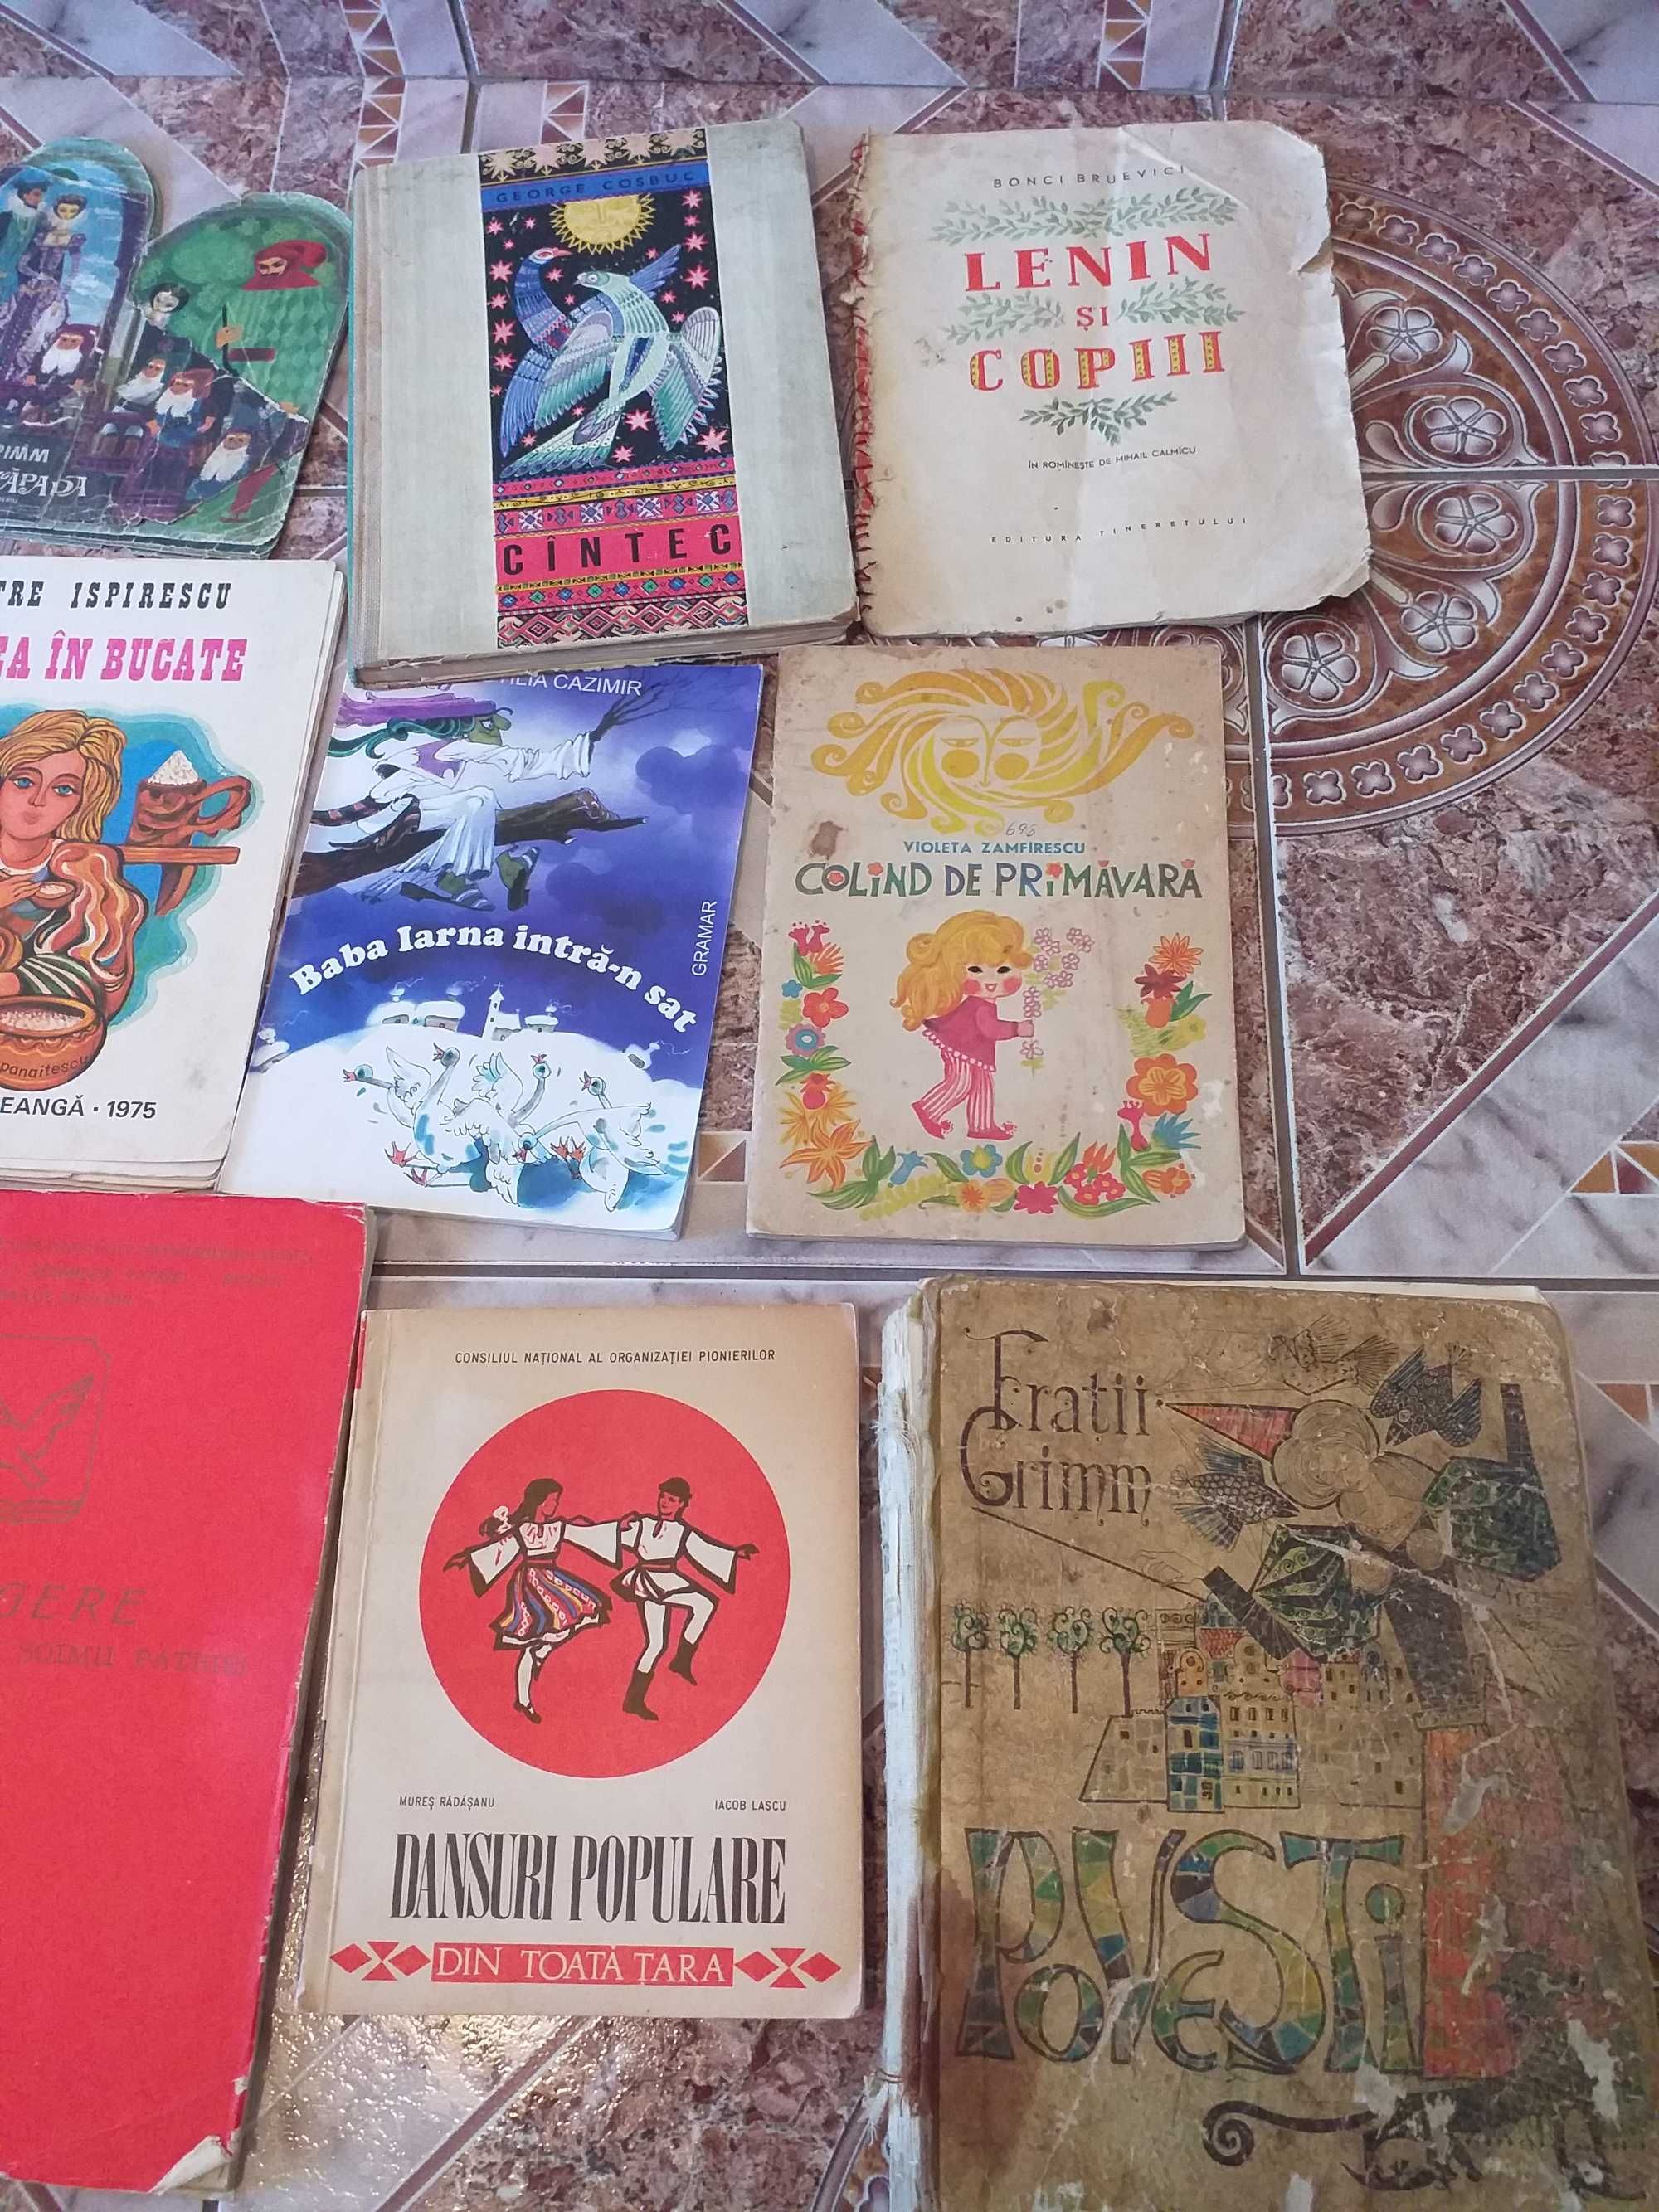 Carti vechi:Dansuri populare toata tara,Povesti/Povestiri,anii 1970-60